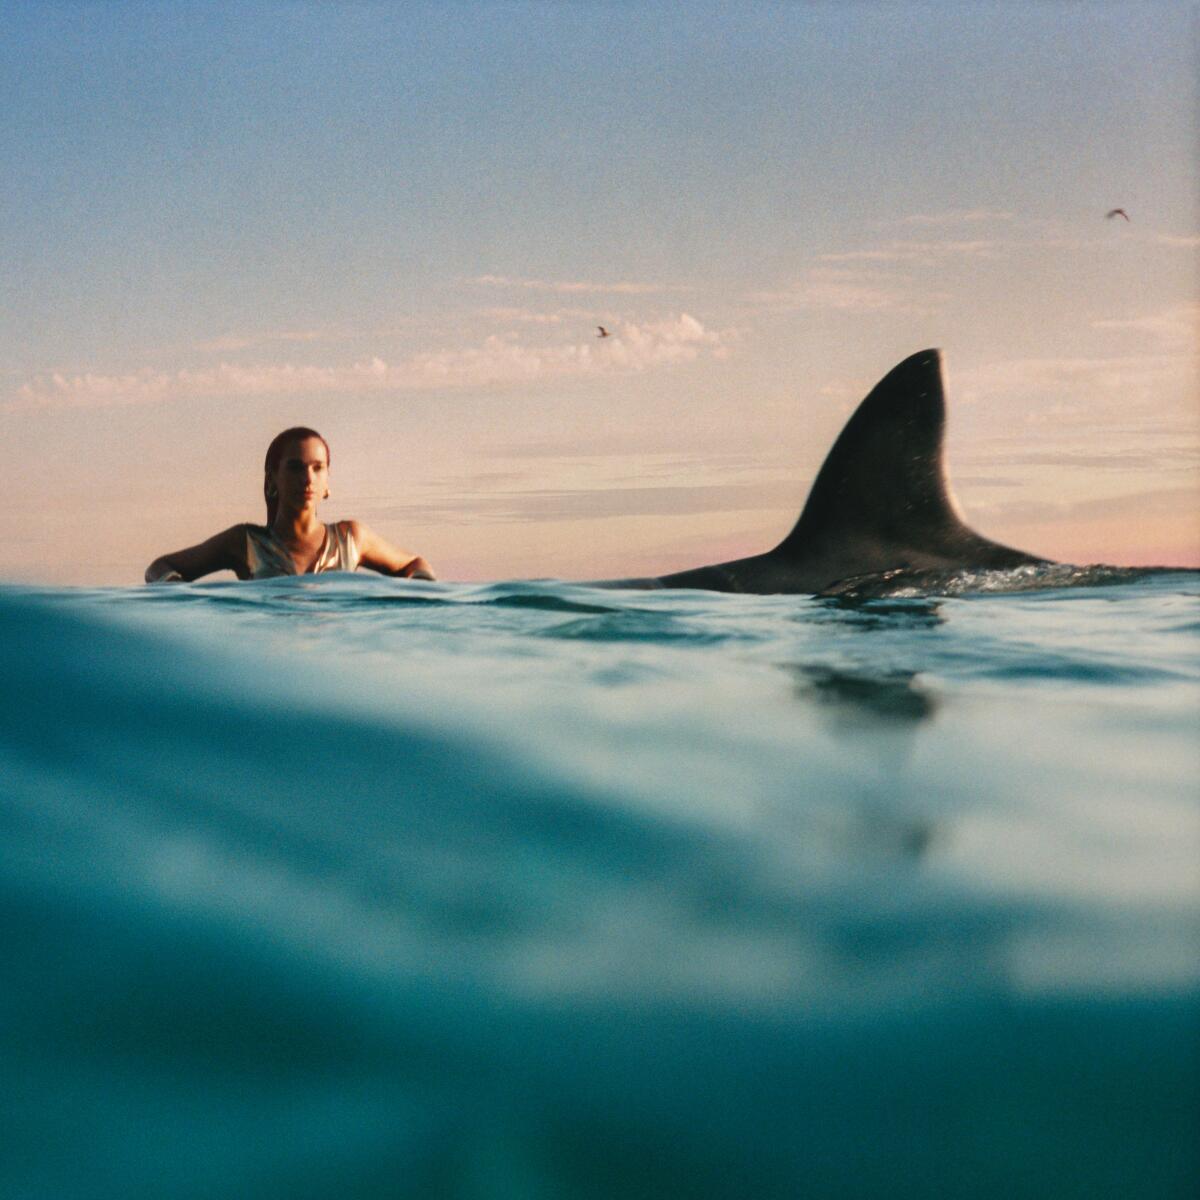 Eine Frau in einiger Entfernung im Meer, neben einer großen Haifischflosse